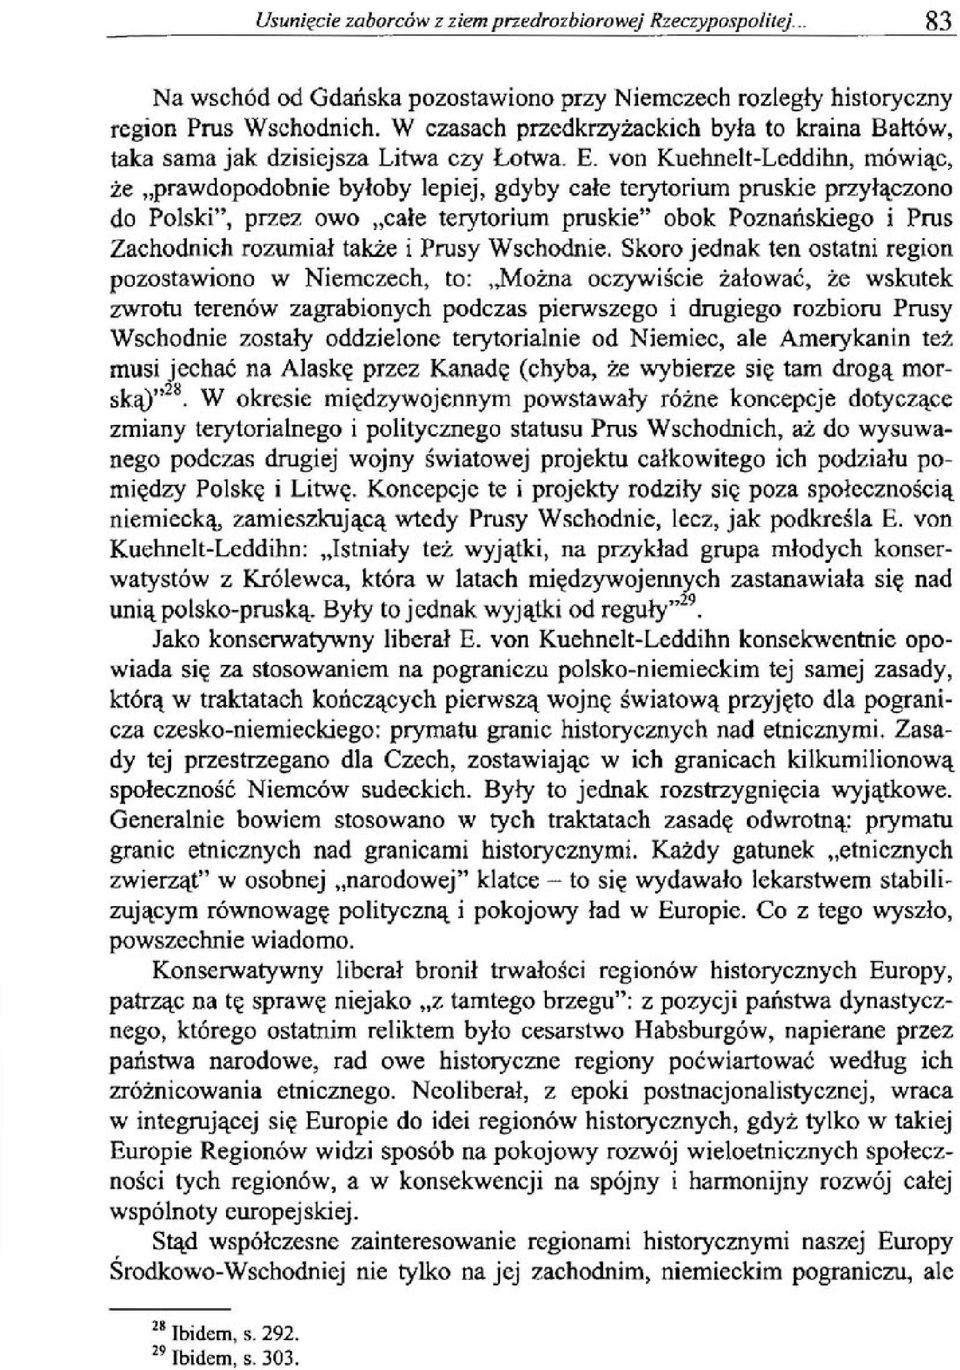 von Kuehnelt-Leddihn, mówiąc, że prawdopodobnie byłoby lepiej, gdyby całe terytorium pruskie przyłączono do Polski", przez owo całe terytorium pruskie" obok Poznańskiego i Prus Zachodnich rozumiał